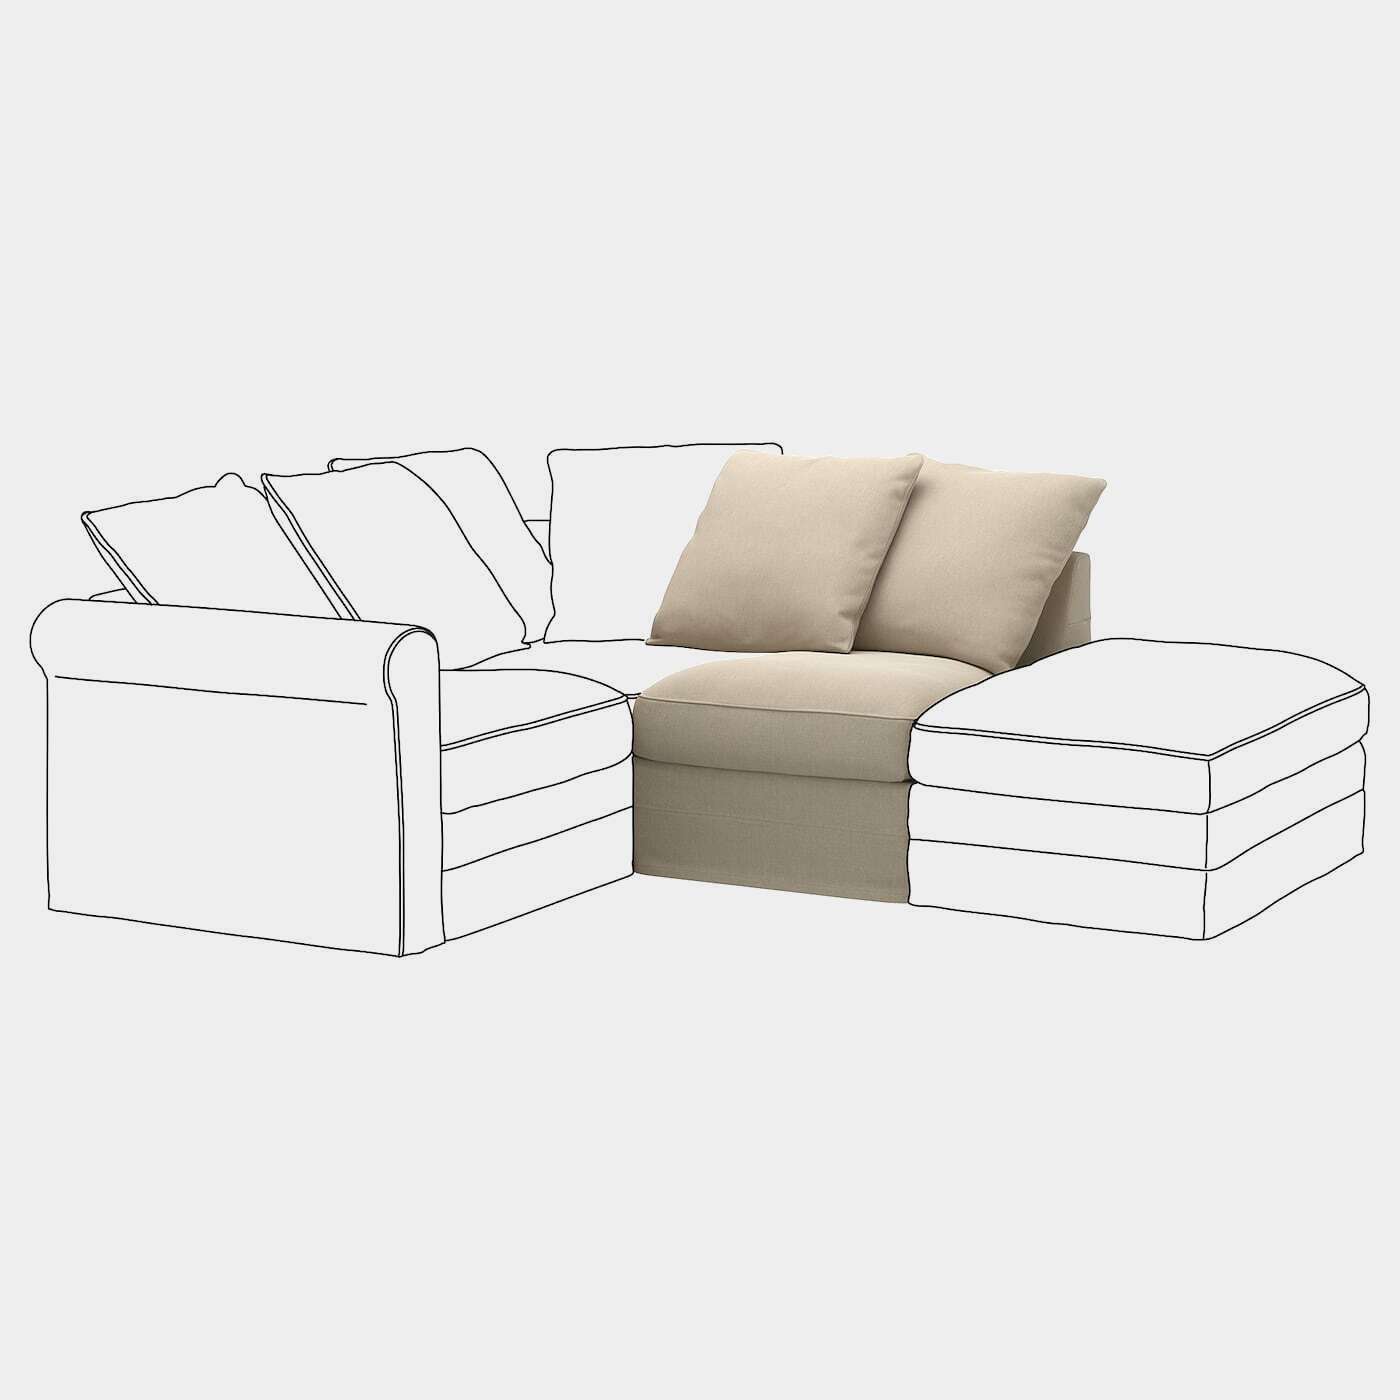 GRÖNLID Bezug Sitzelement  -  - Möbel Ideen für dein Zuhause von Home Trends. Möbel Trends von Social Media Influencer für dein Skandi Zuhause.